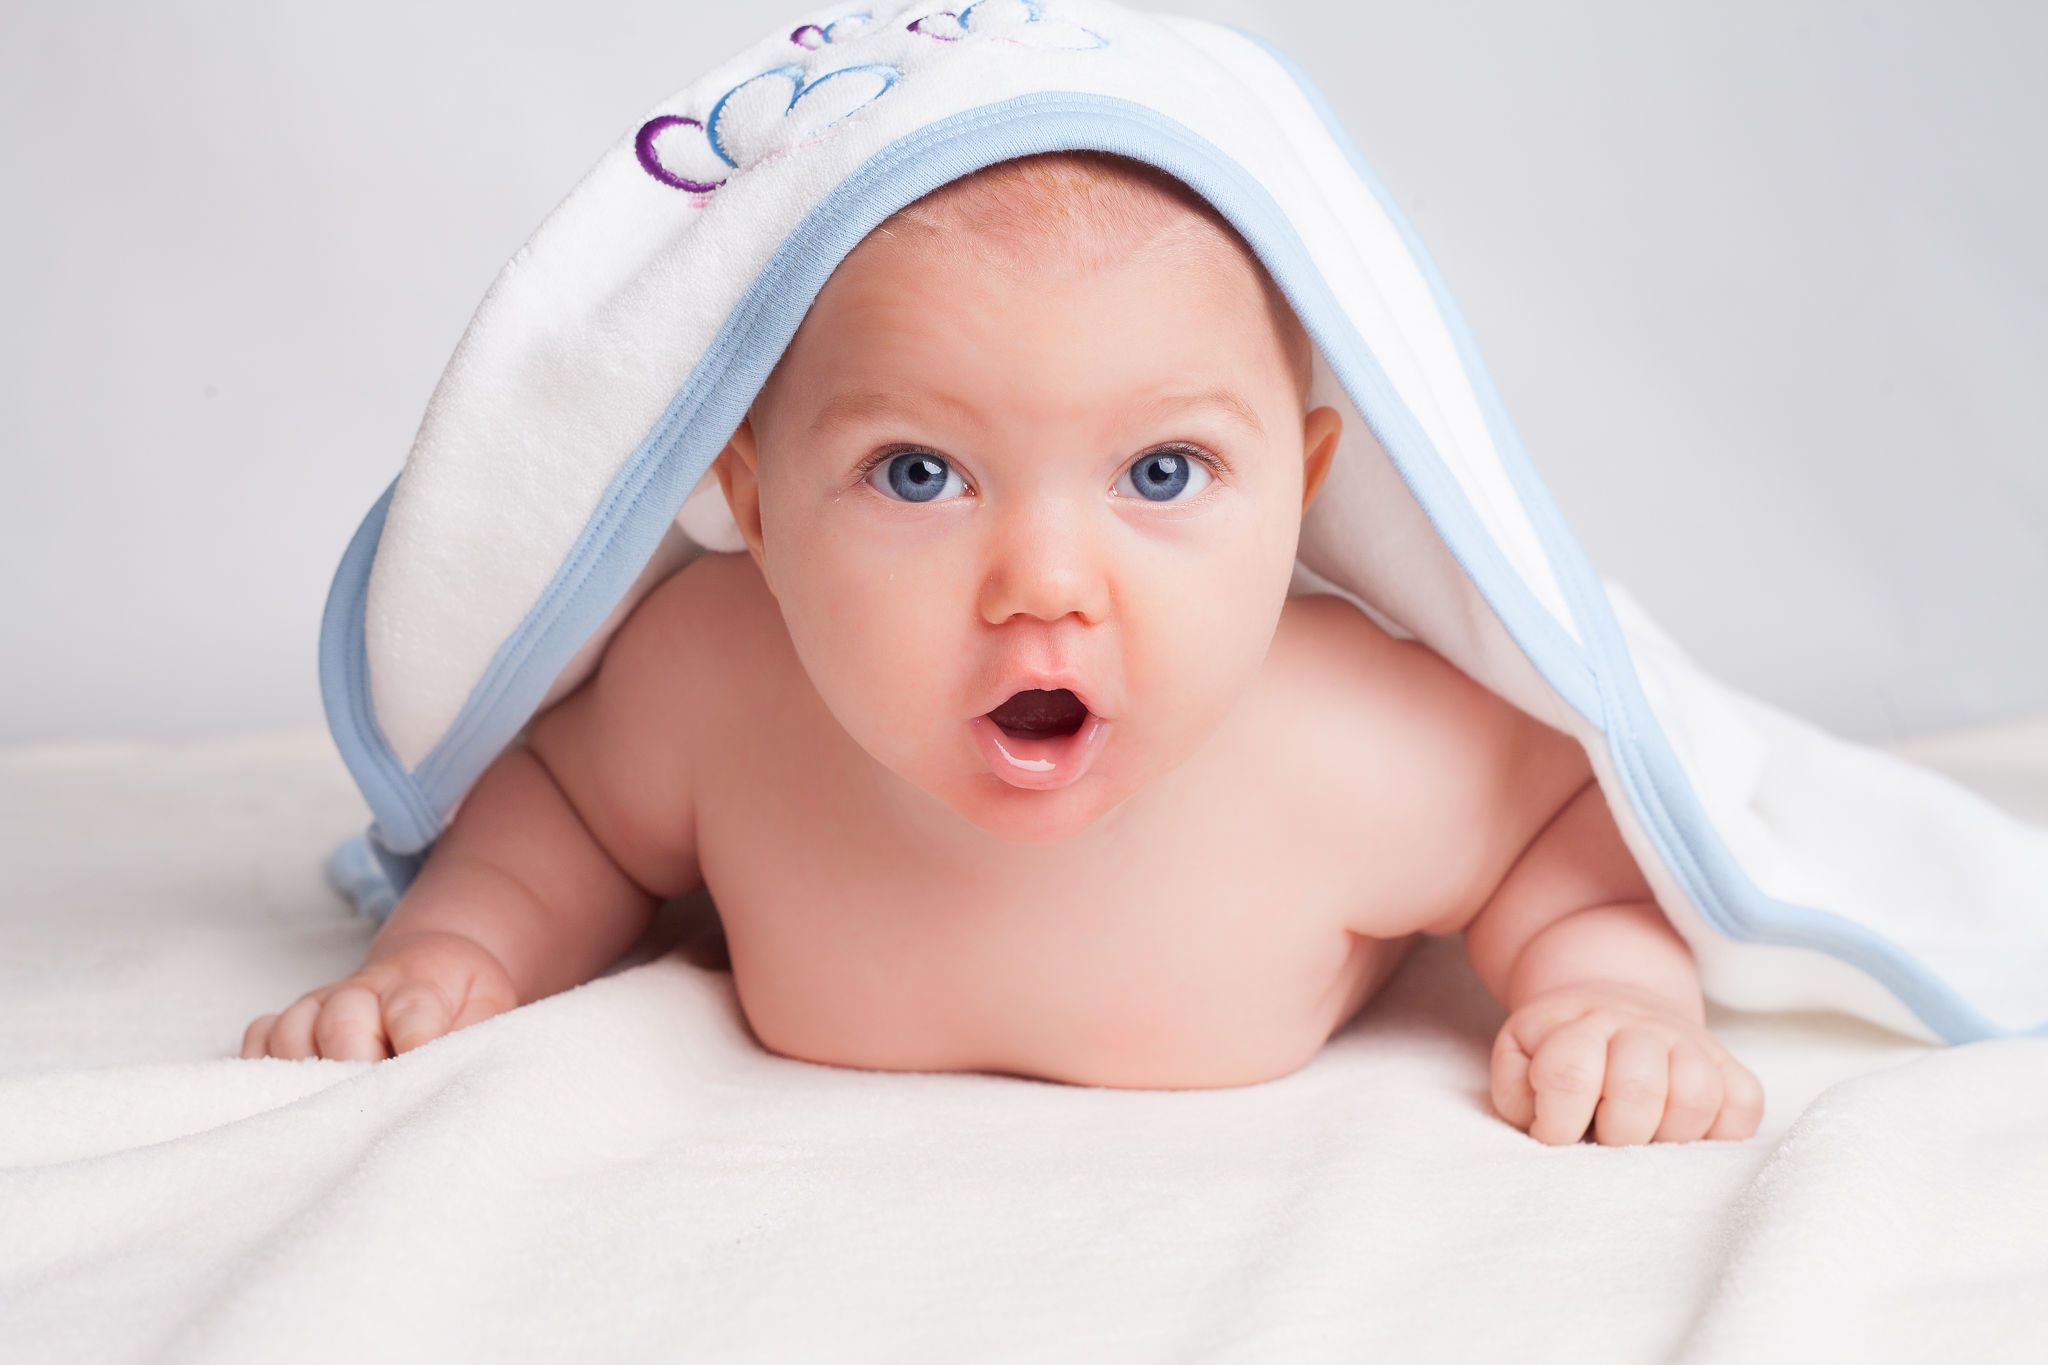 Basking Babies hooded baby towel